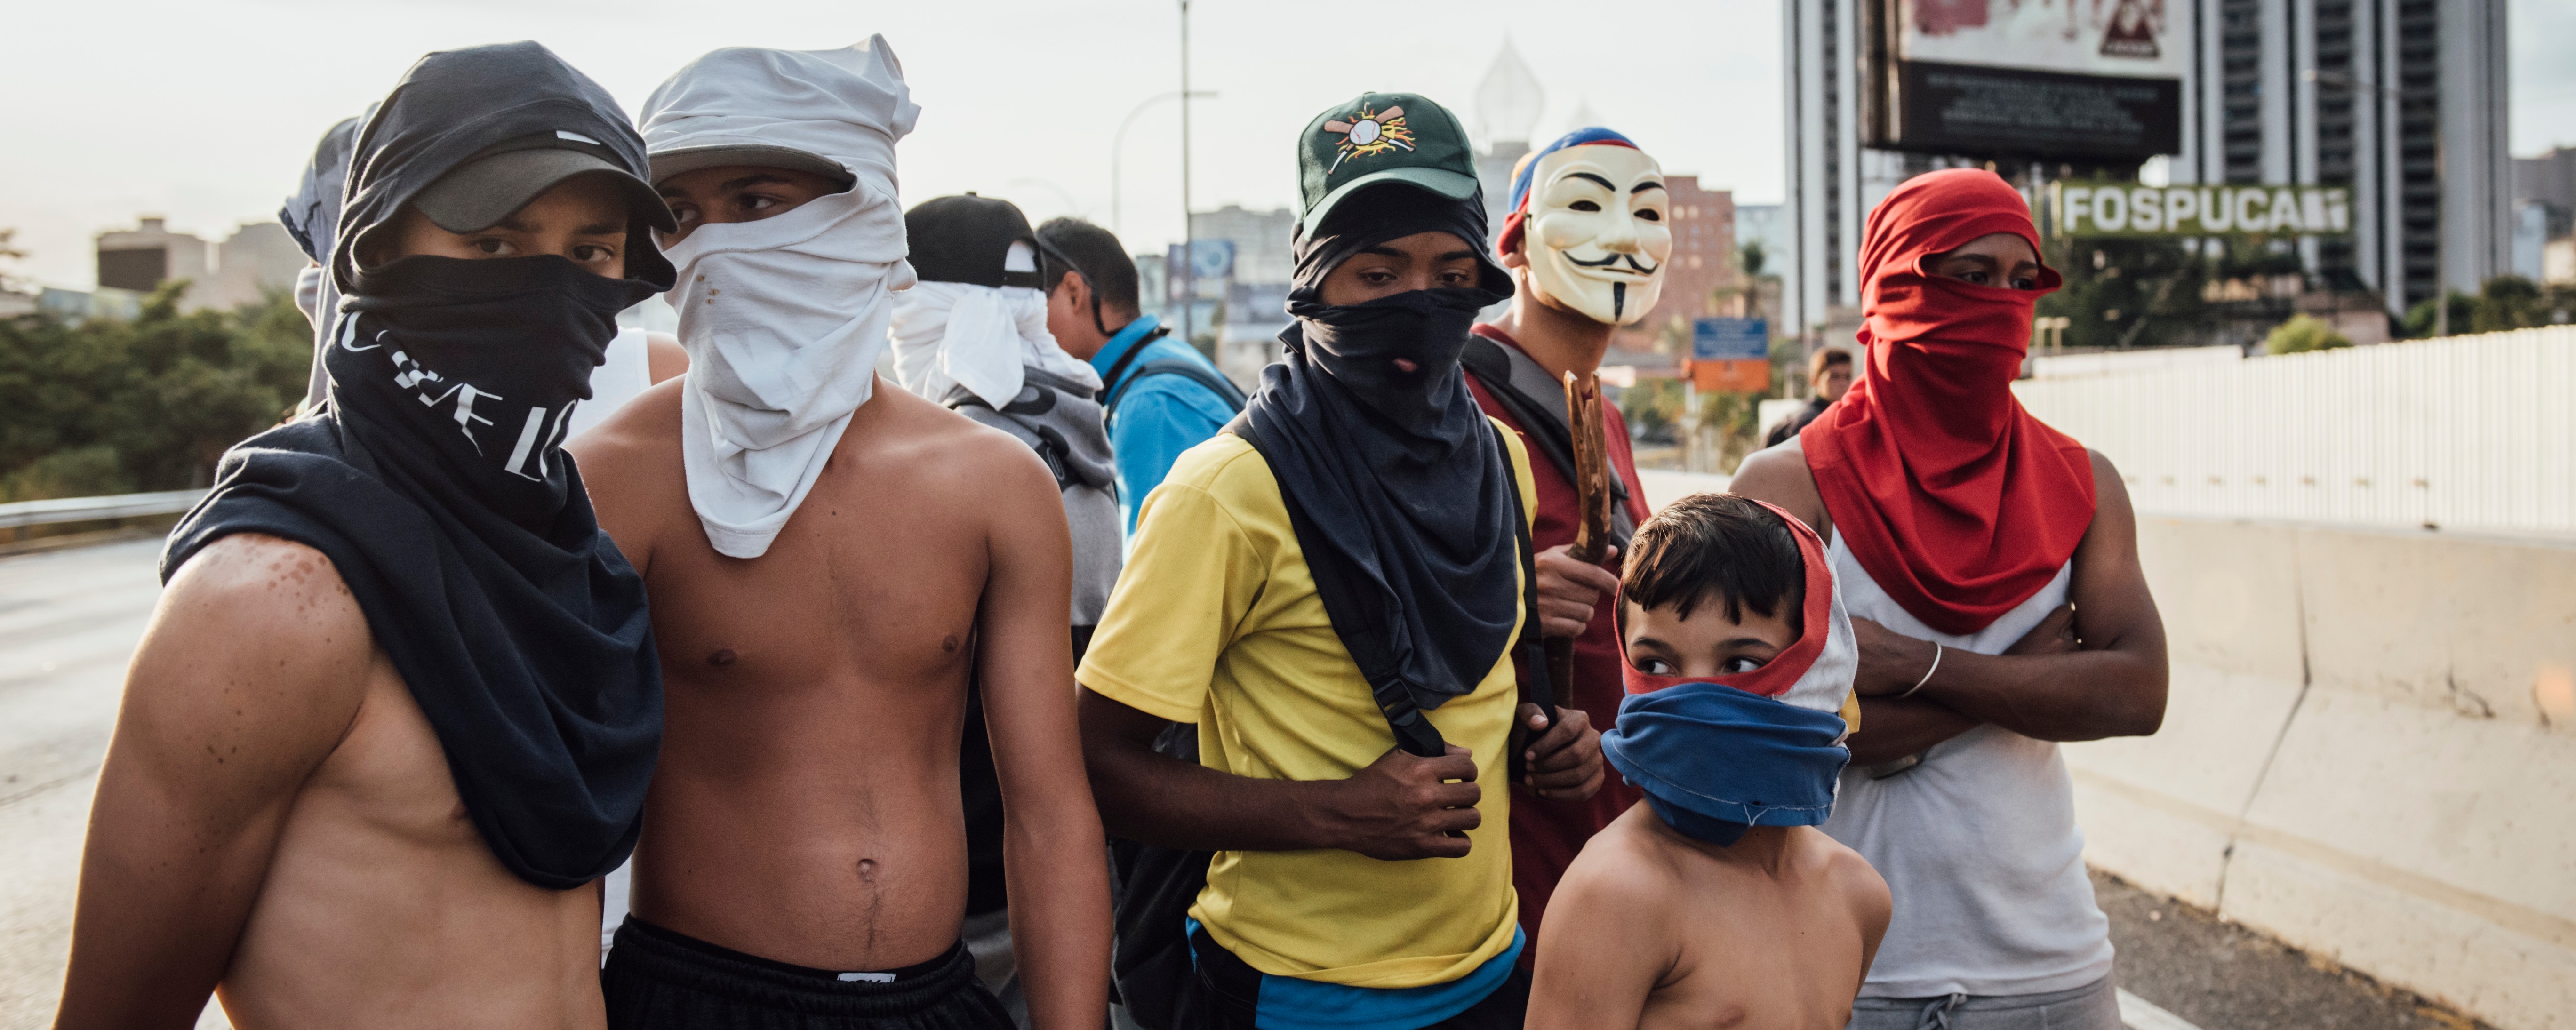 Caracas sex in a man Venezuelan Women: